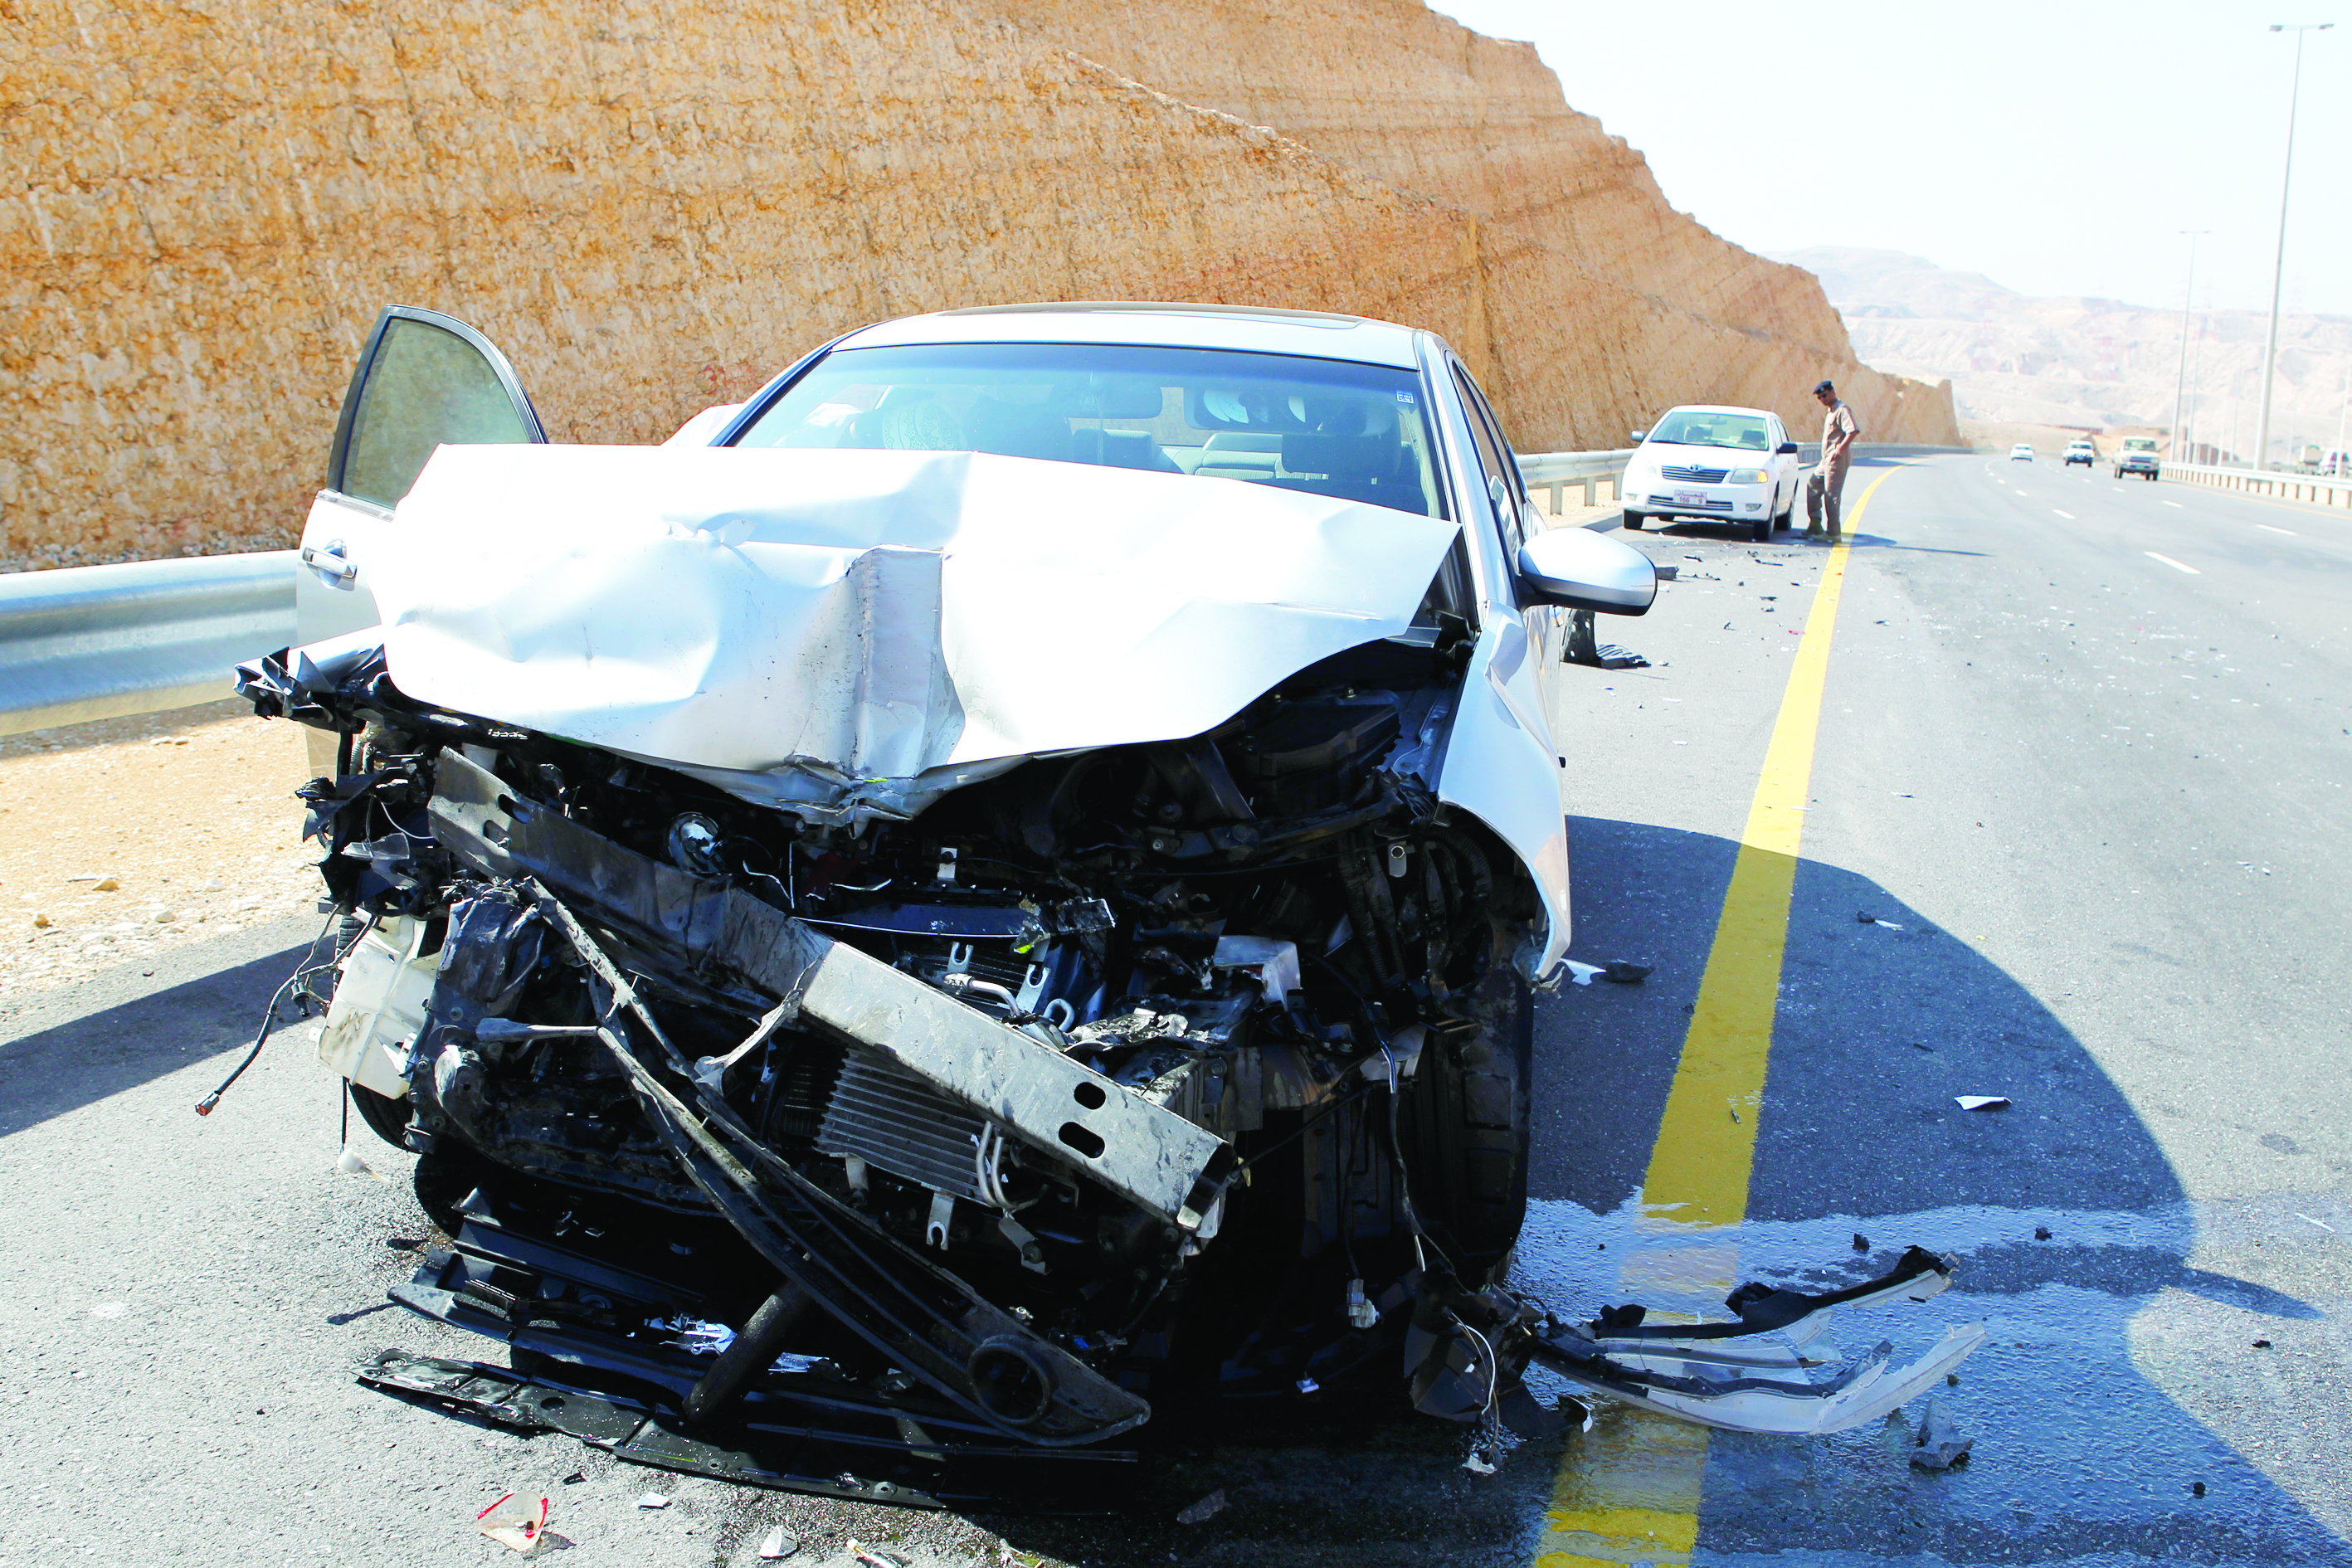 فيما استحوذت إصاباتها على 74 % من خدمات الإسعاف..
السرعة في مقدمة أسباب حوادث المرور